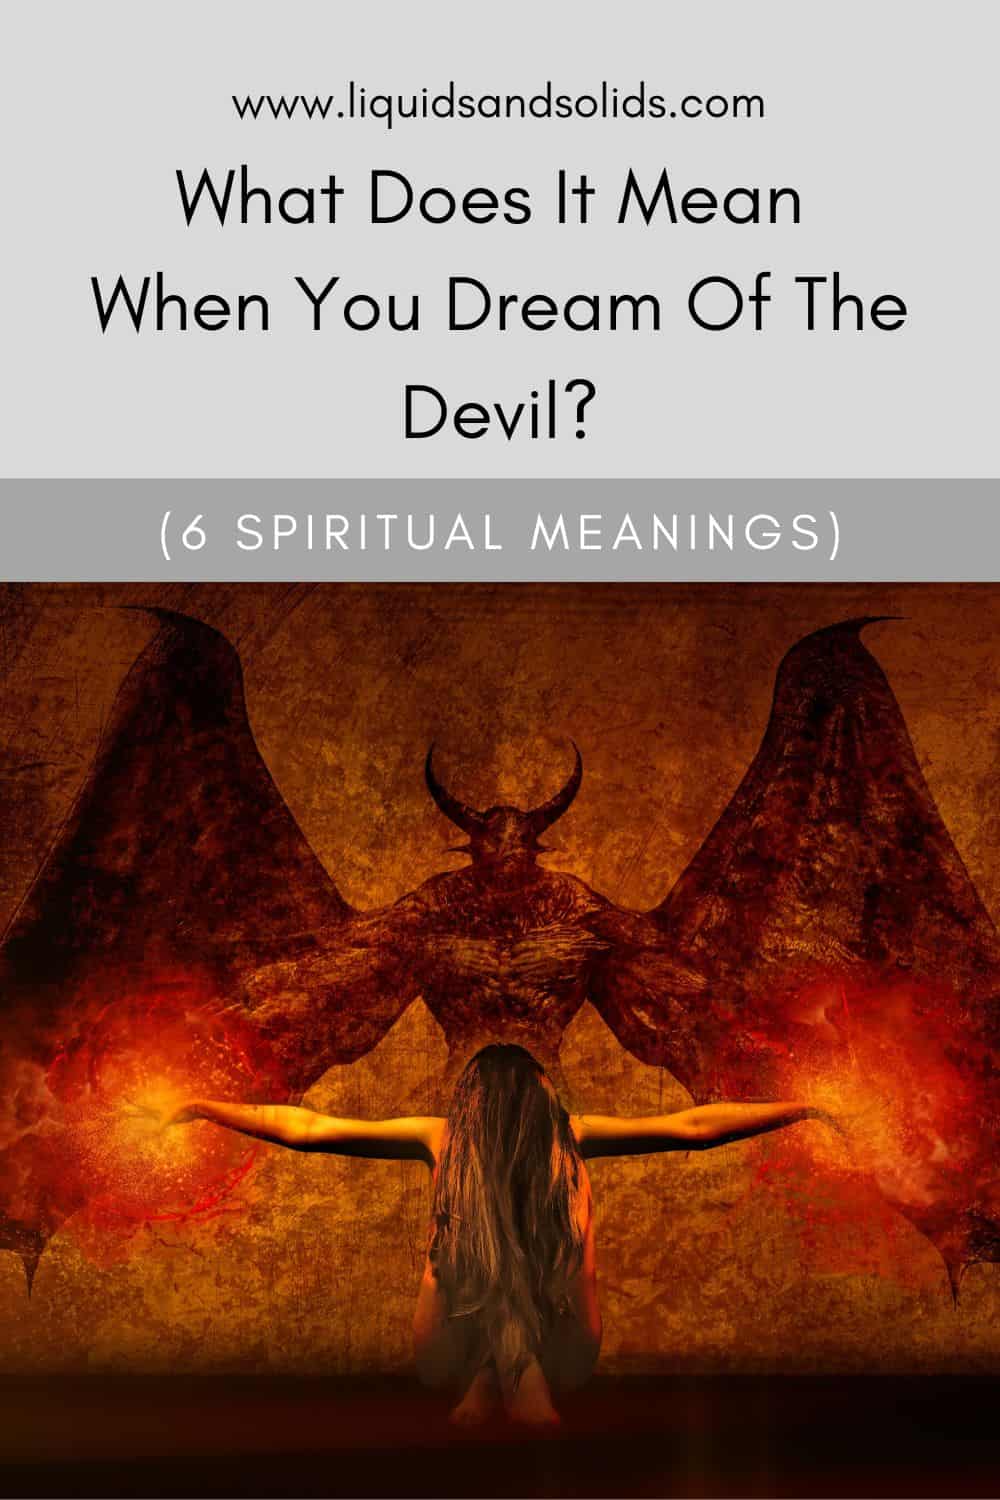  Ce que signifie rêver du diable (6 significations spirituelles)